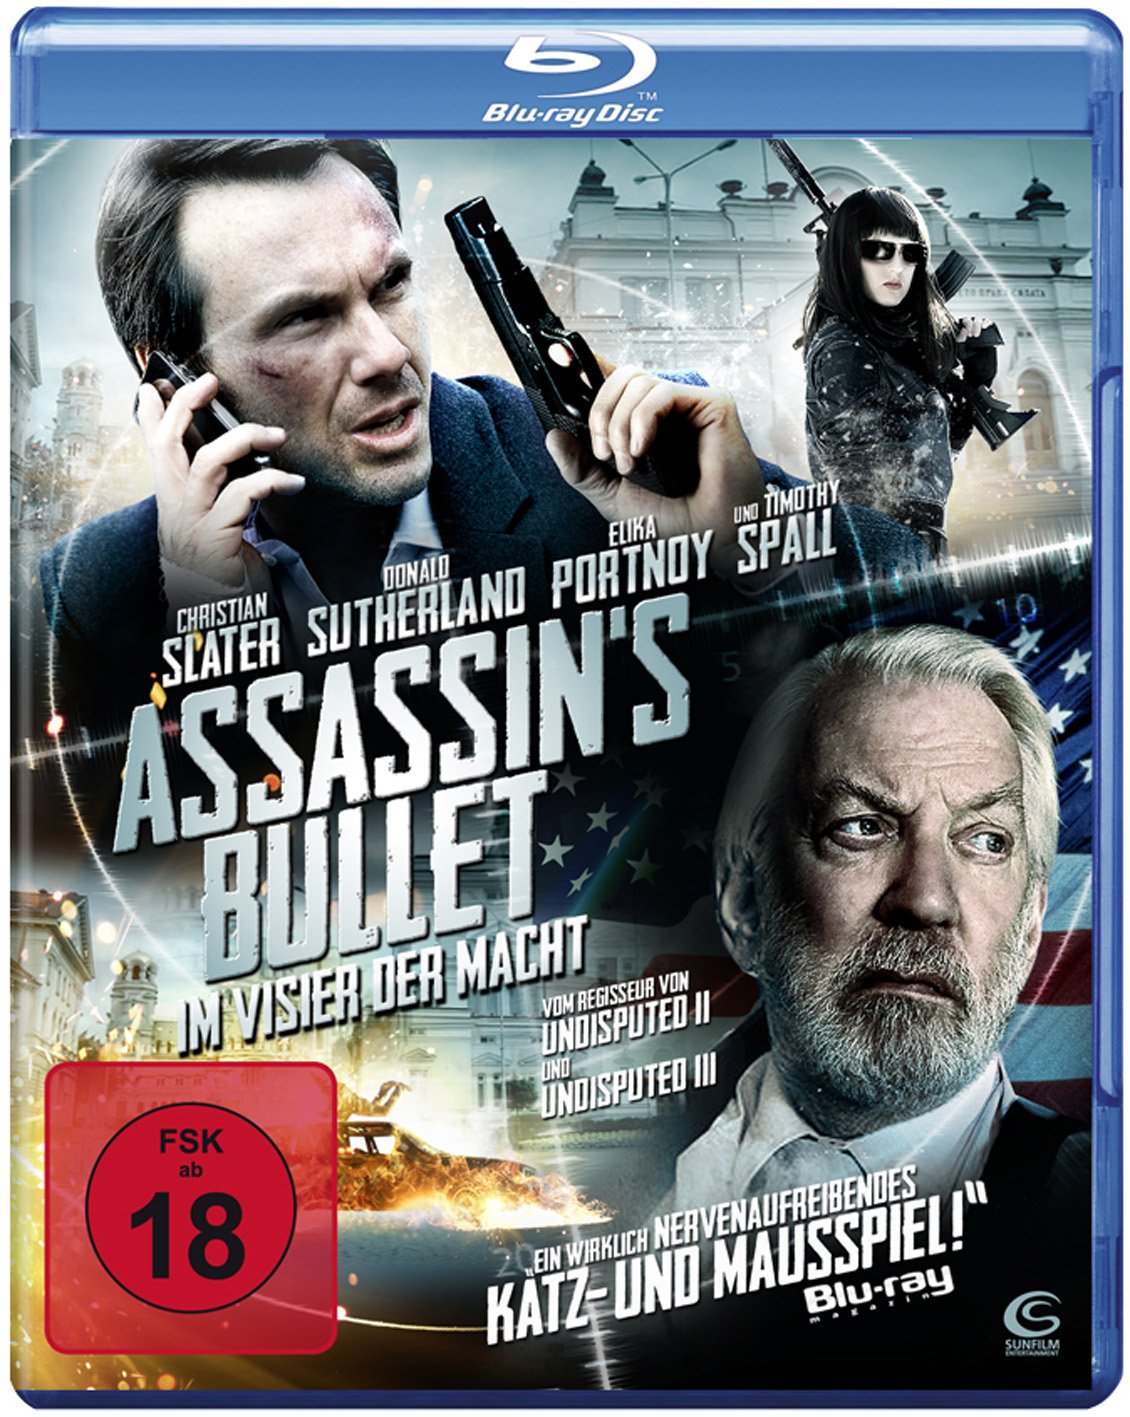 Assassin's Bullet - Im Visier der Macht (Blu-ray)